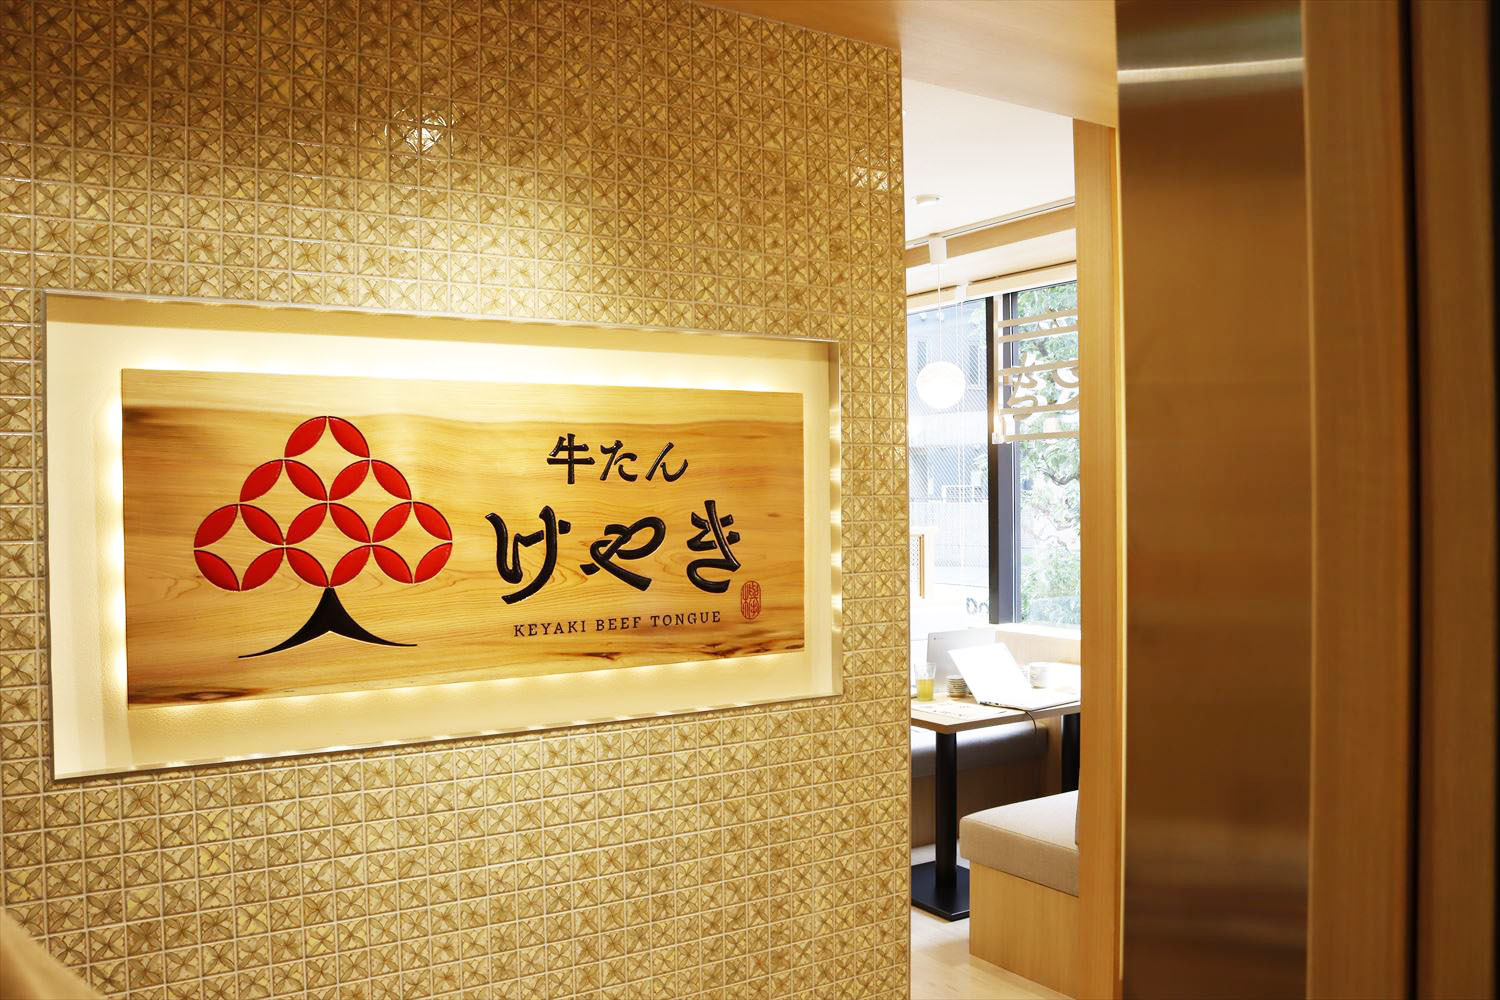 7月20日（木）11時29分にオープン。仙台の市木・けやきを伝統文様の七宝柄で描いた看板が出迎えます